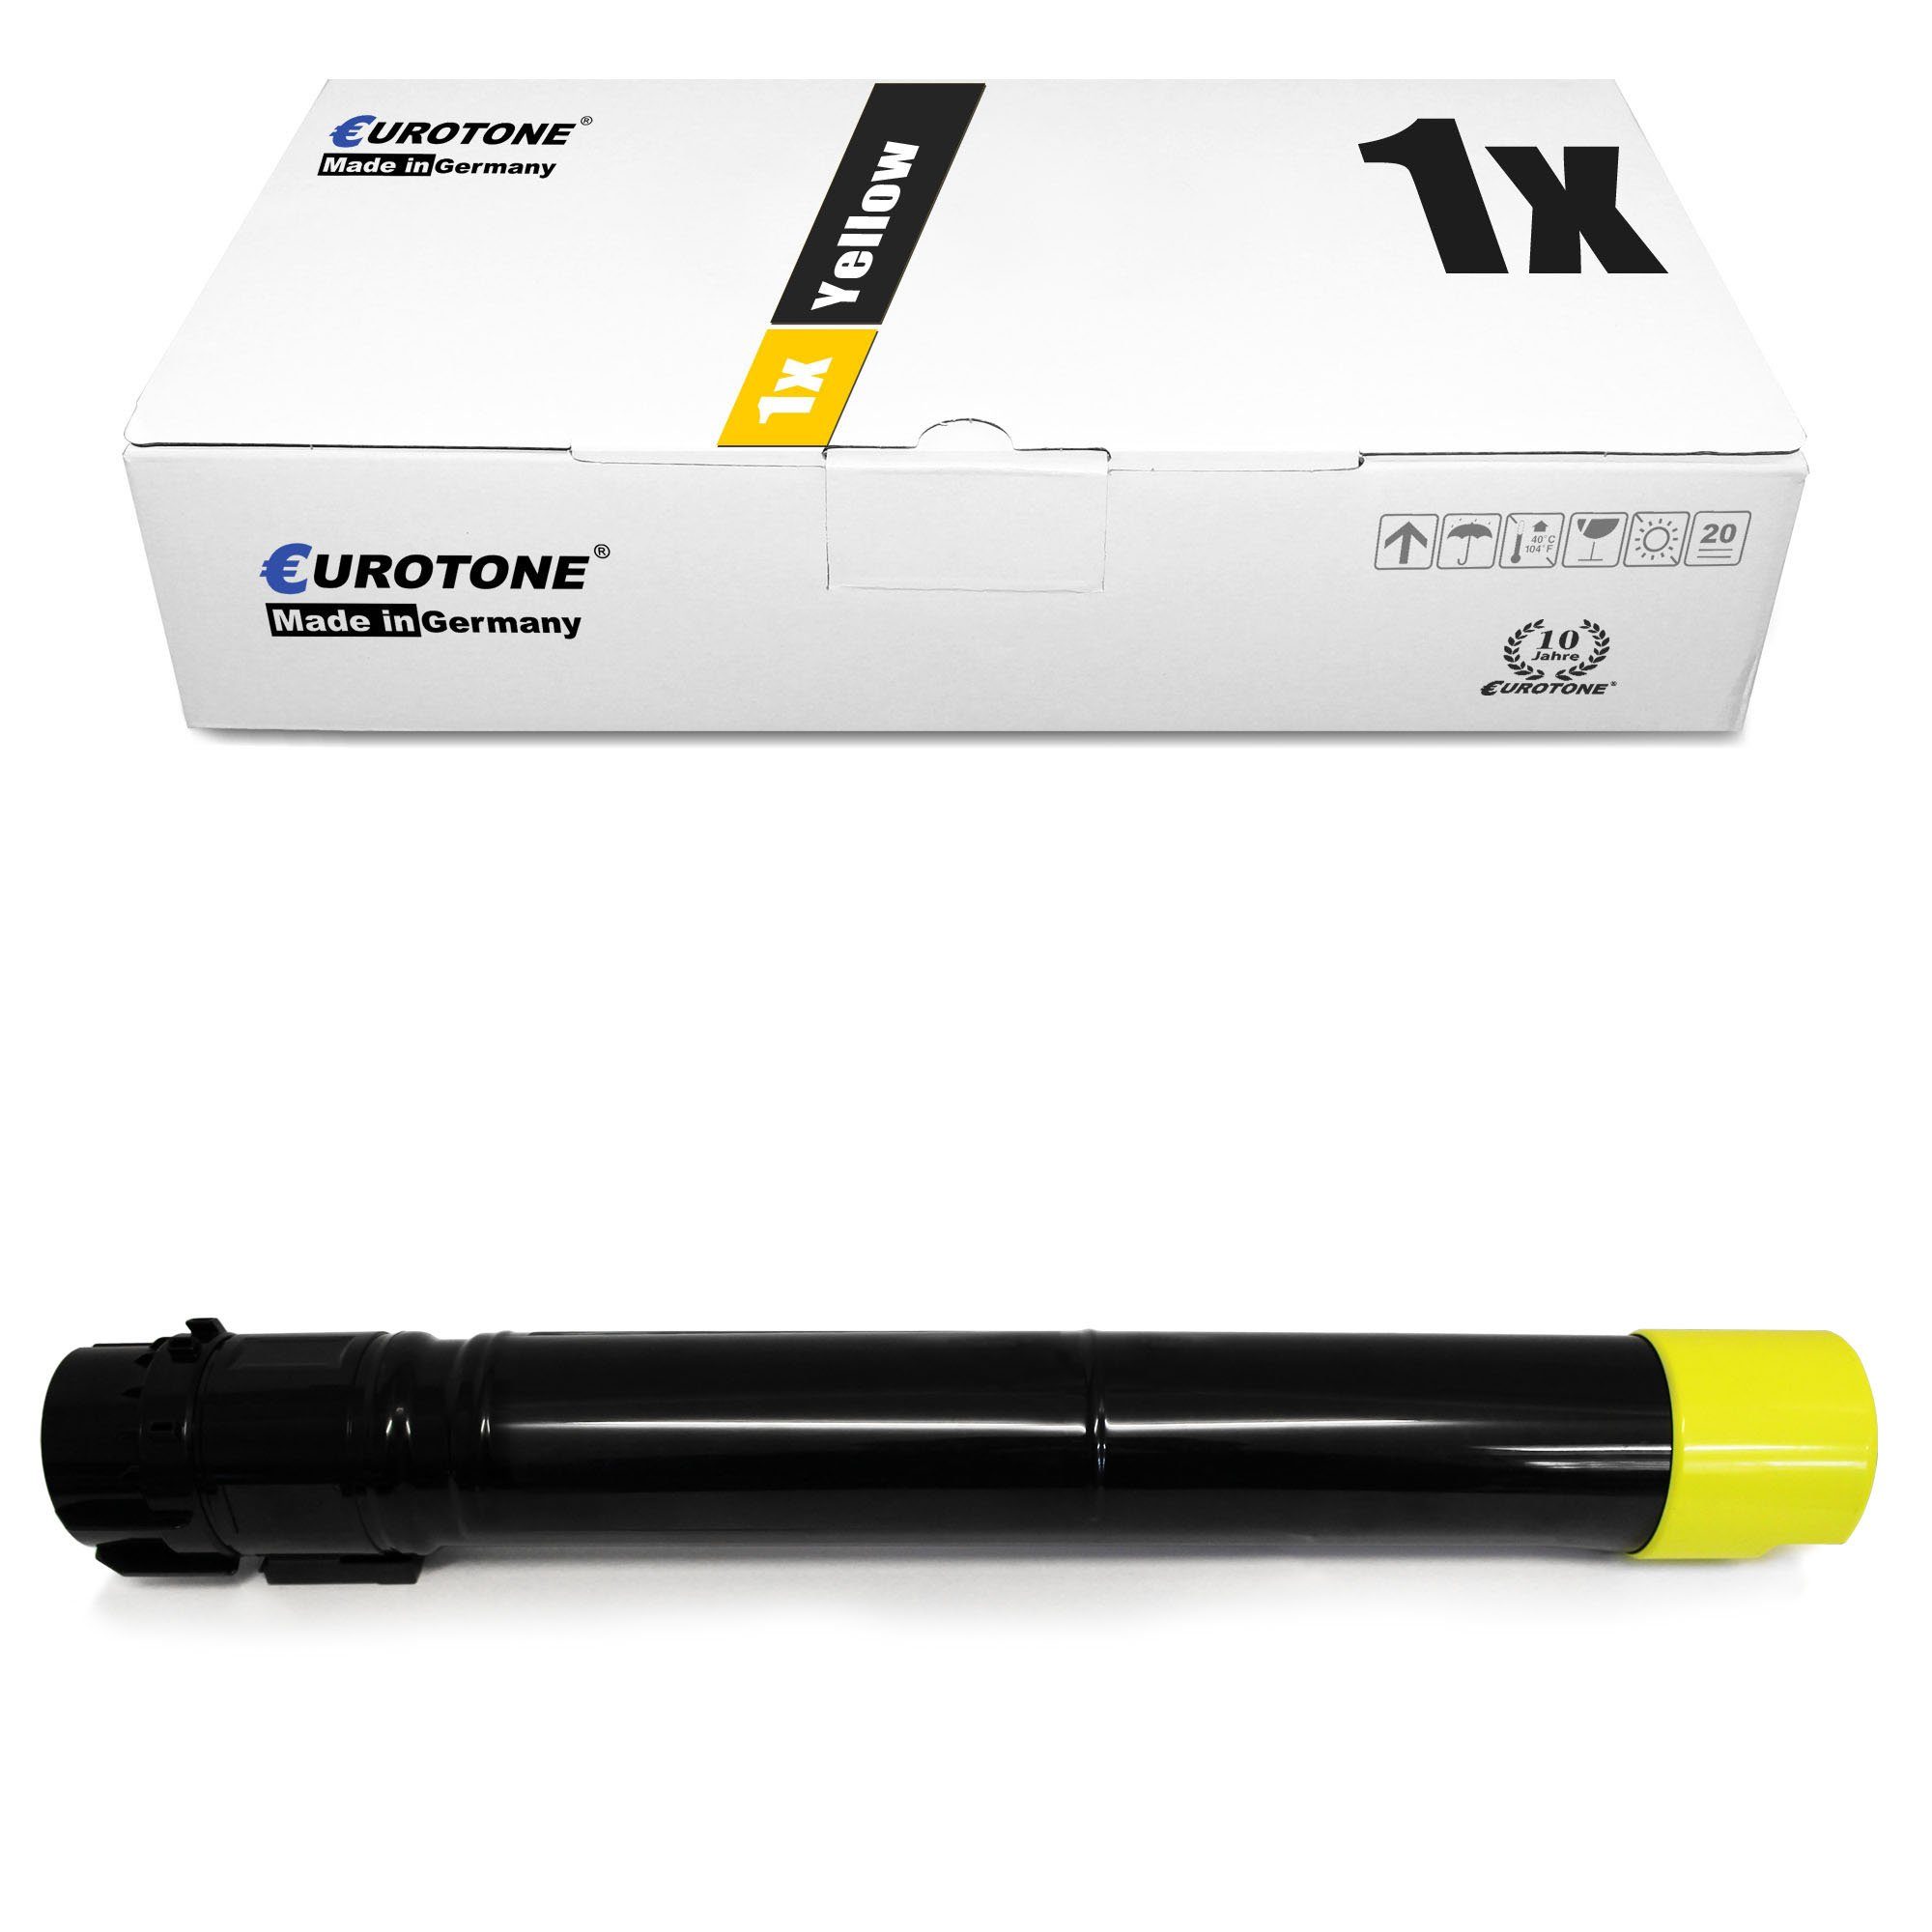 Eurotone Tonerkartusche Toner ersetzt Xerox 6R01458 Yellow